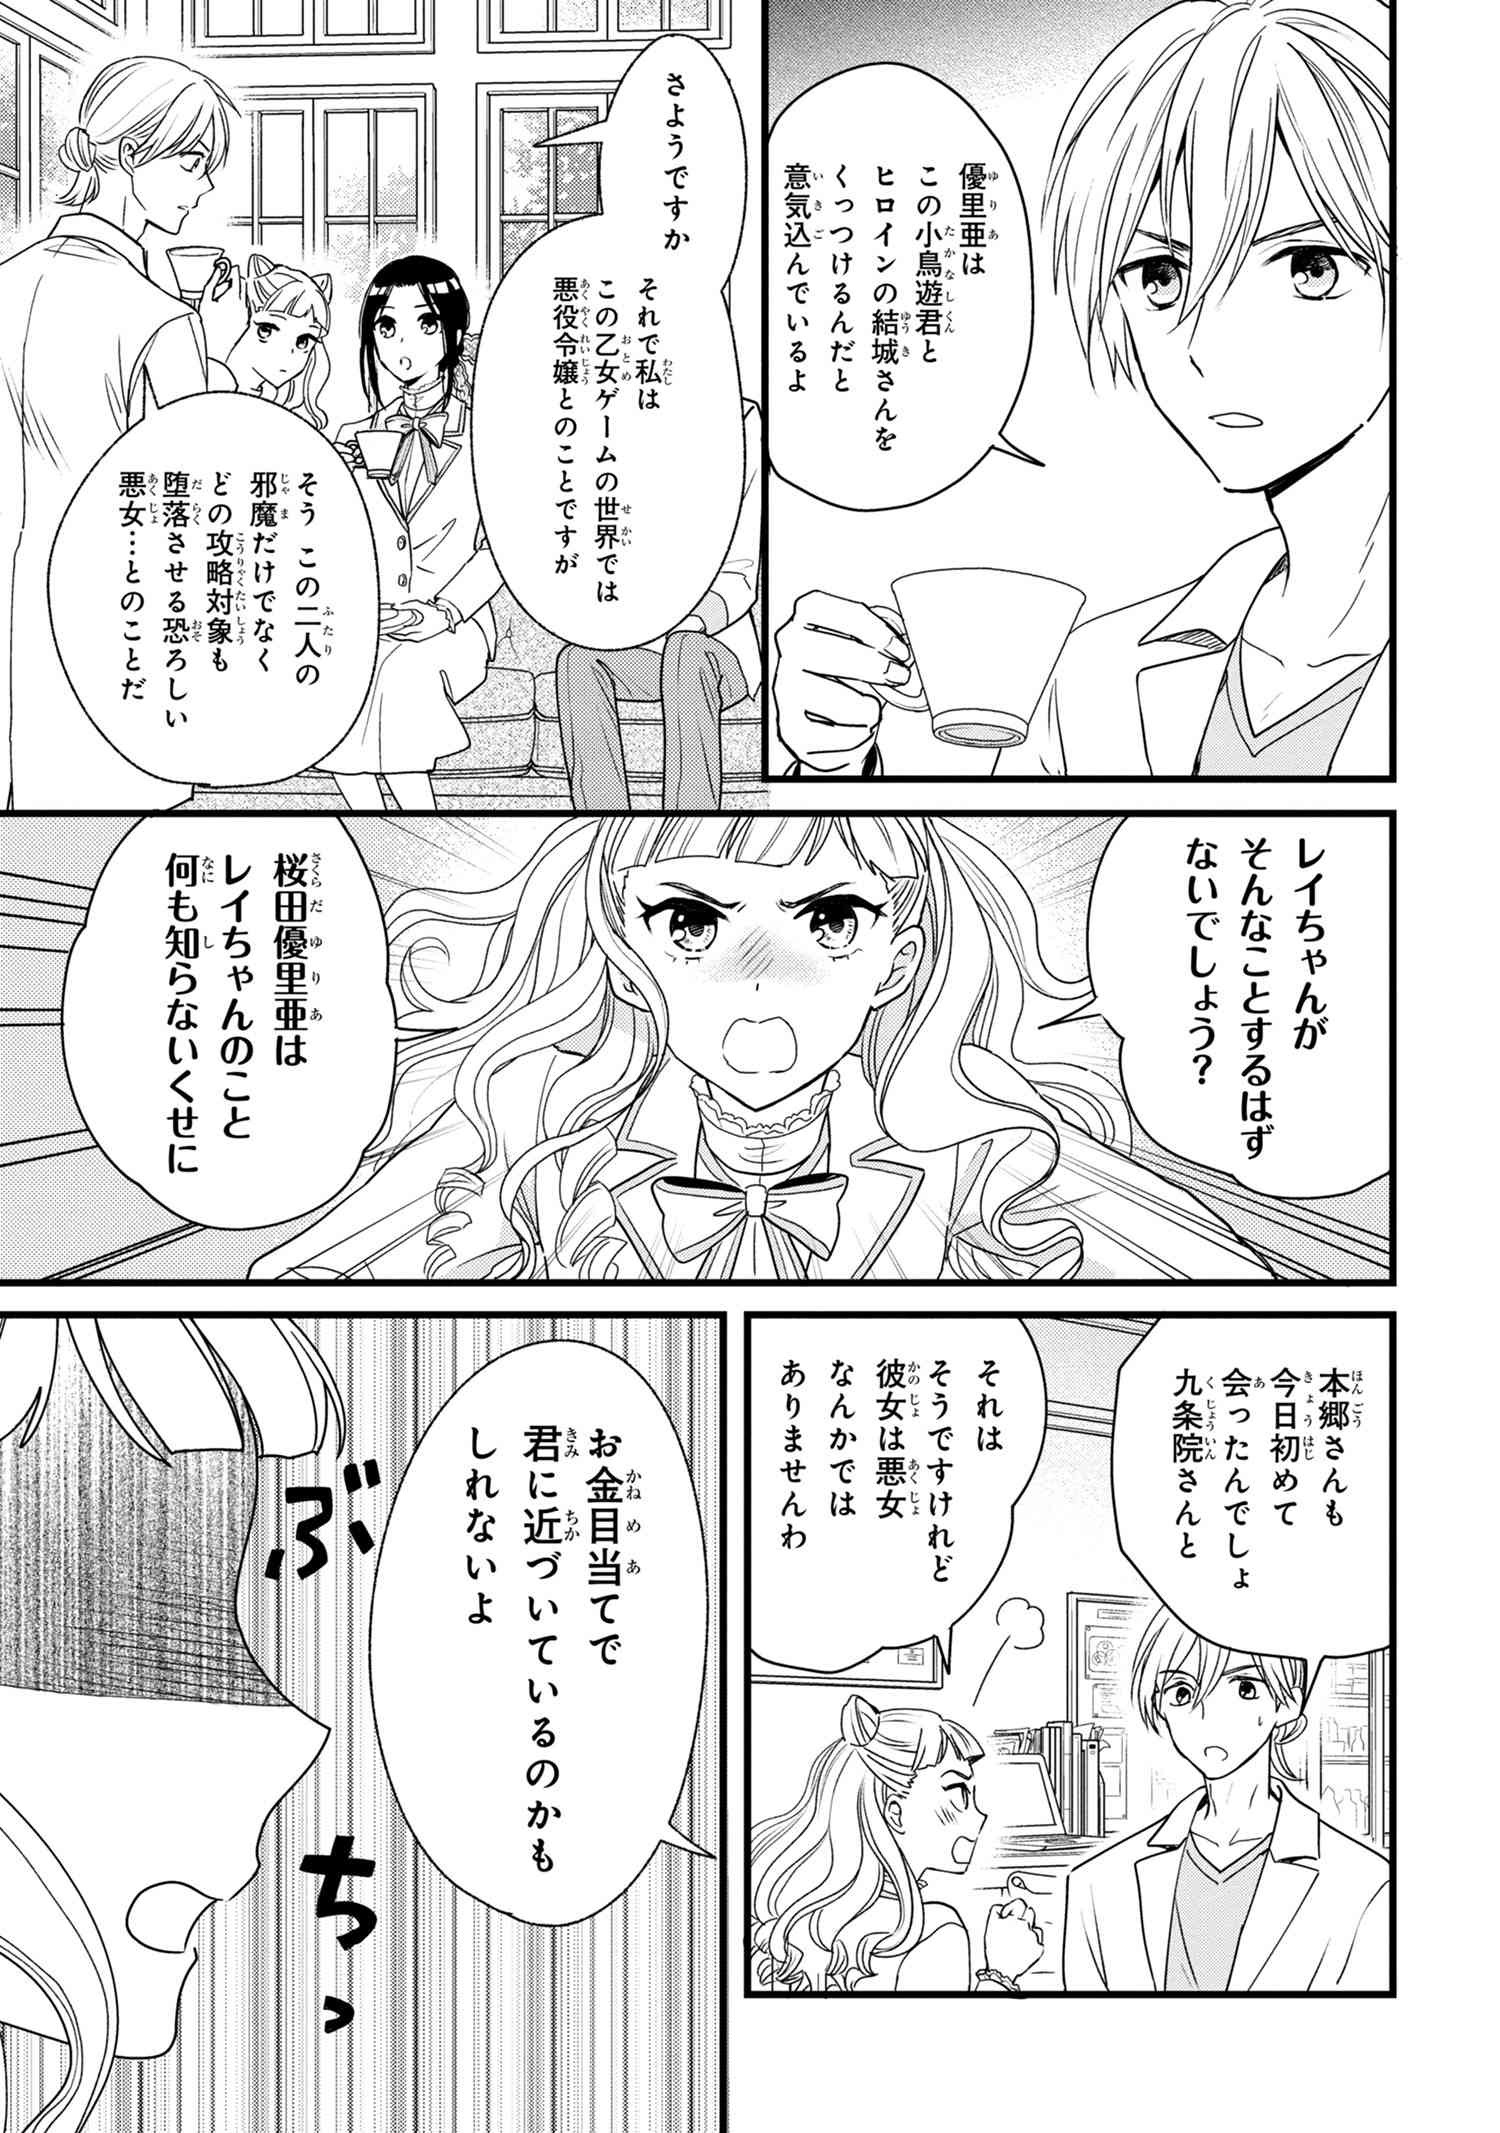 Reiko no Fuugi Akuyaku Reijou to Yobarete imasu ga, tada no Binbou Musume desu - Chapter 3-1 - Page 13